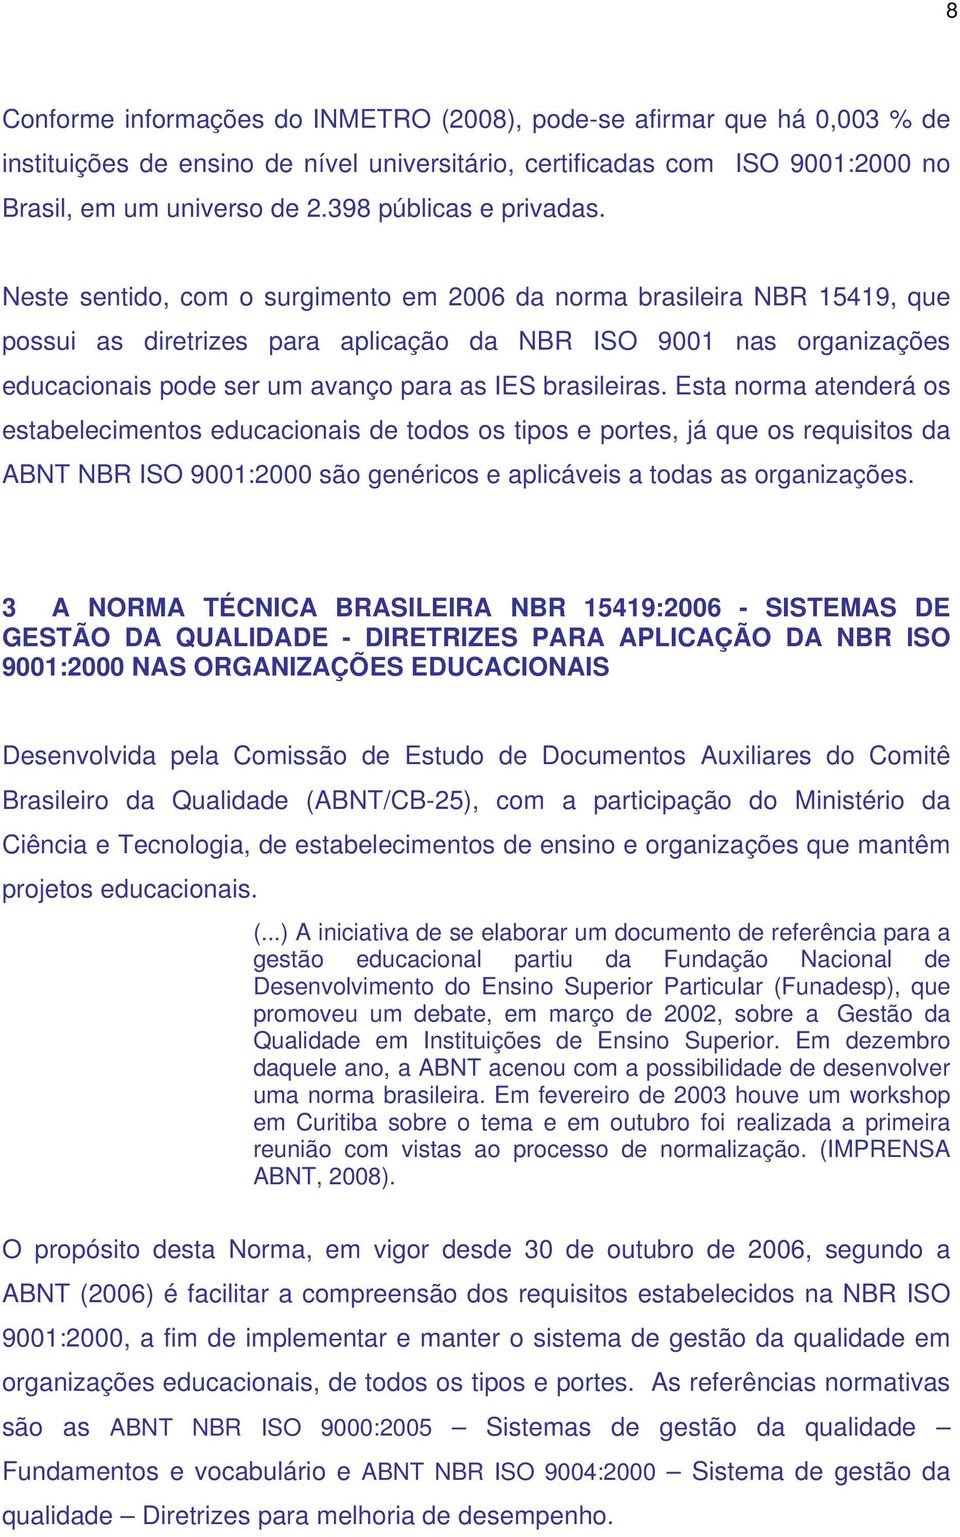 Neste sentido, com o surgimento em 2006 da norma brasileira NBR 15419, que possui as diretrizes para aplicação da NBR ISO 9001 nas organizações educacionais pode ser um avanço para as IES brasileiras.